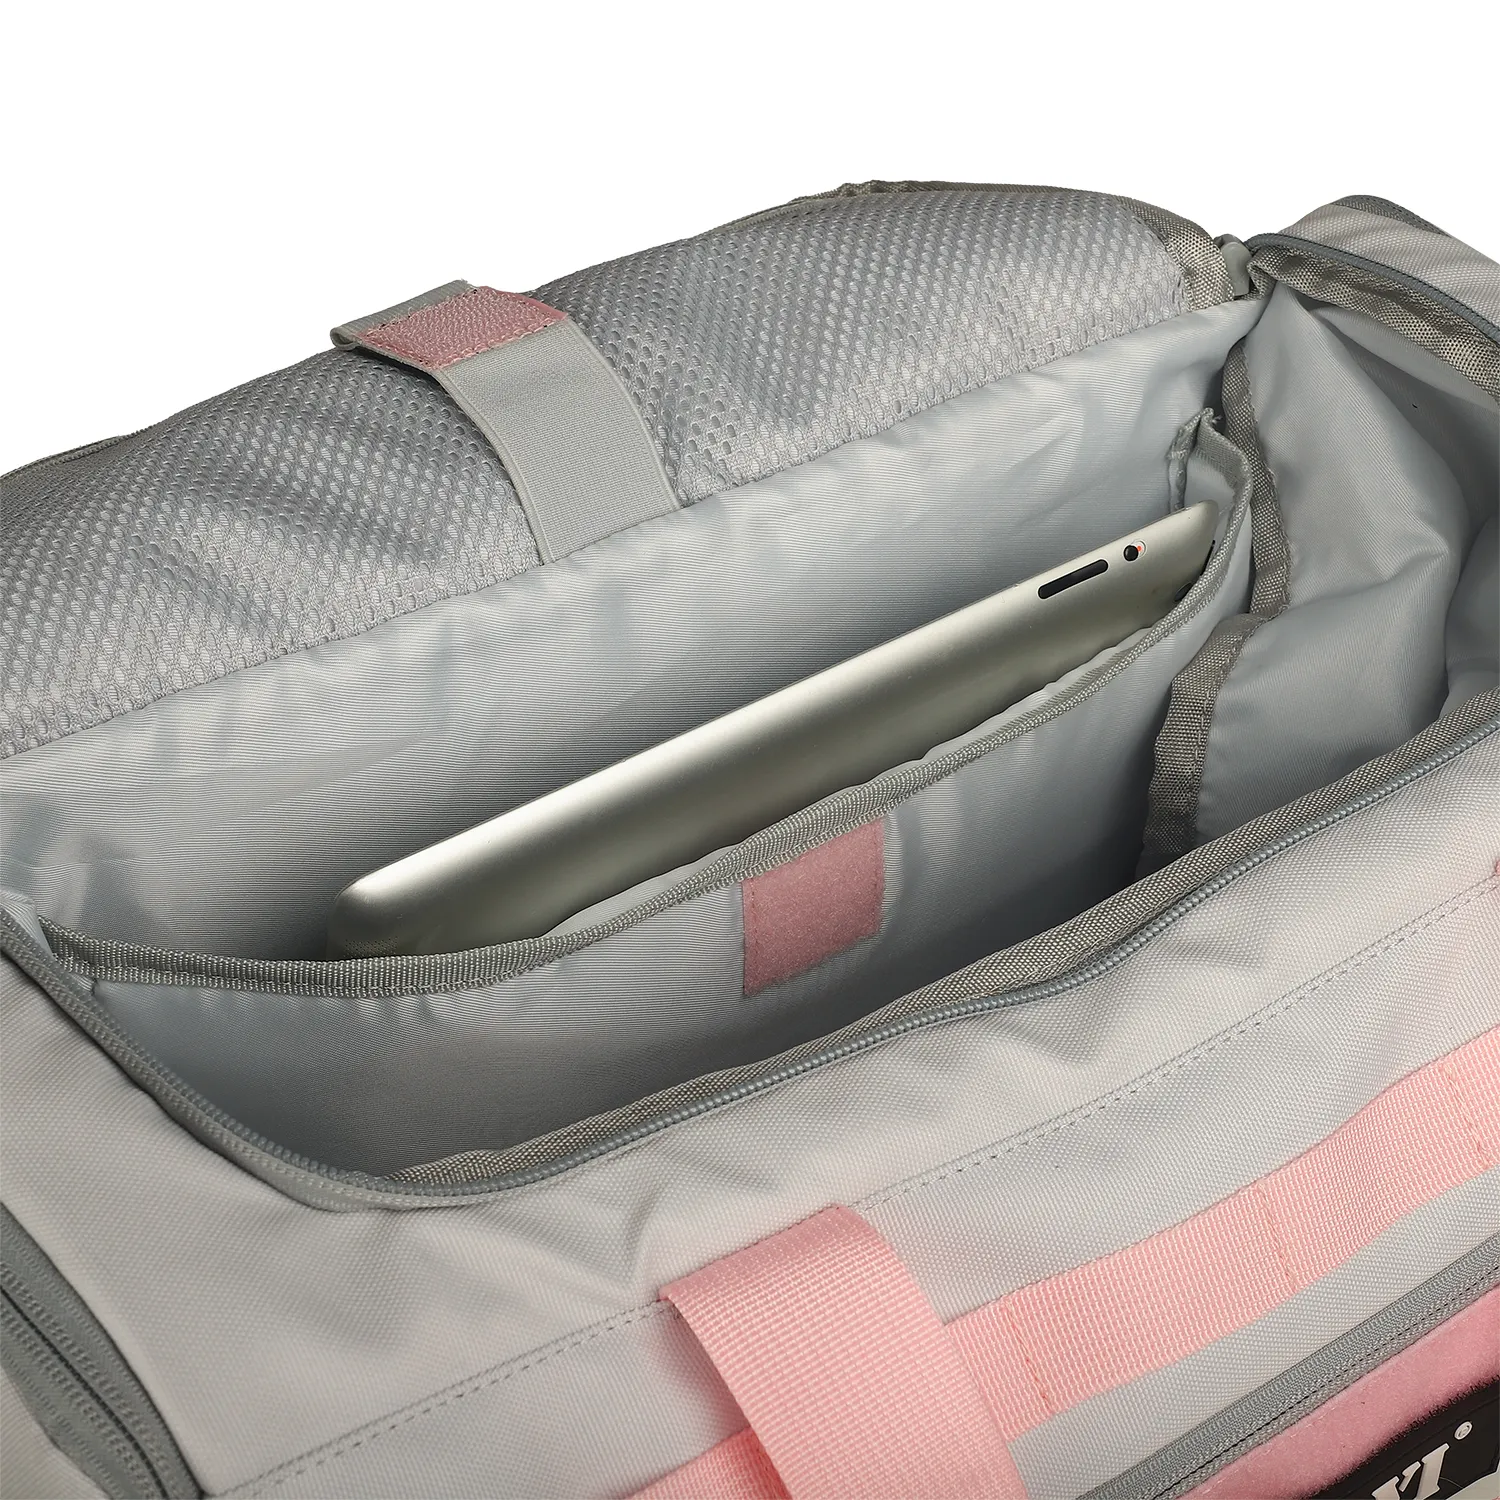 Factory custom weekend duffle bag waterproof multifunction pink luggage gym duffel bag